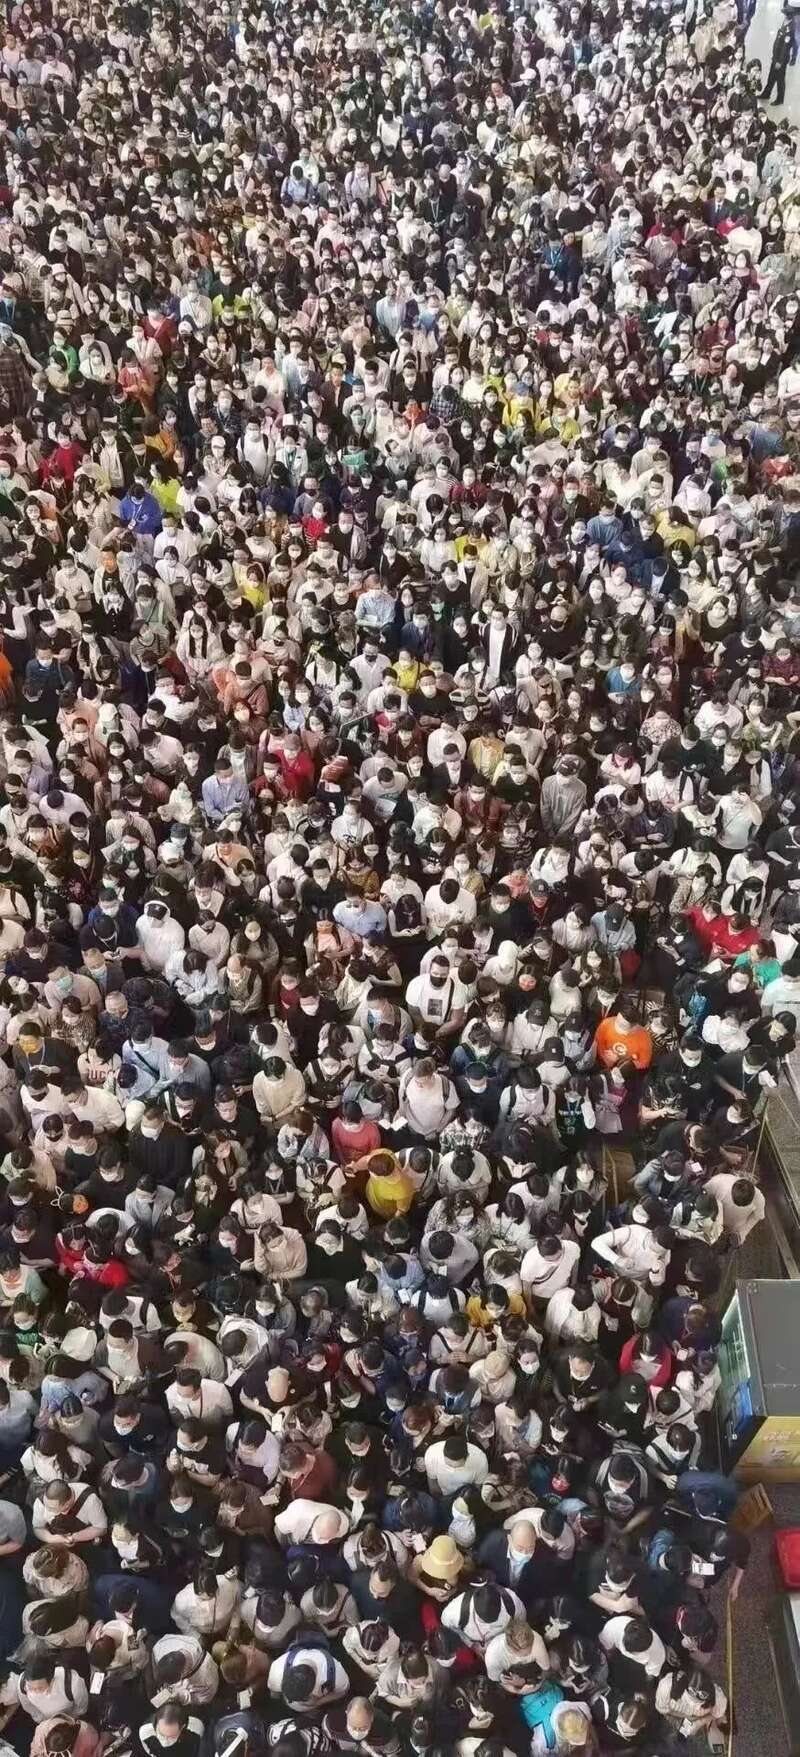 疑有感染者 廣州琶洲會展突然封館 數萬人翻欄逃跑